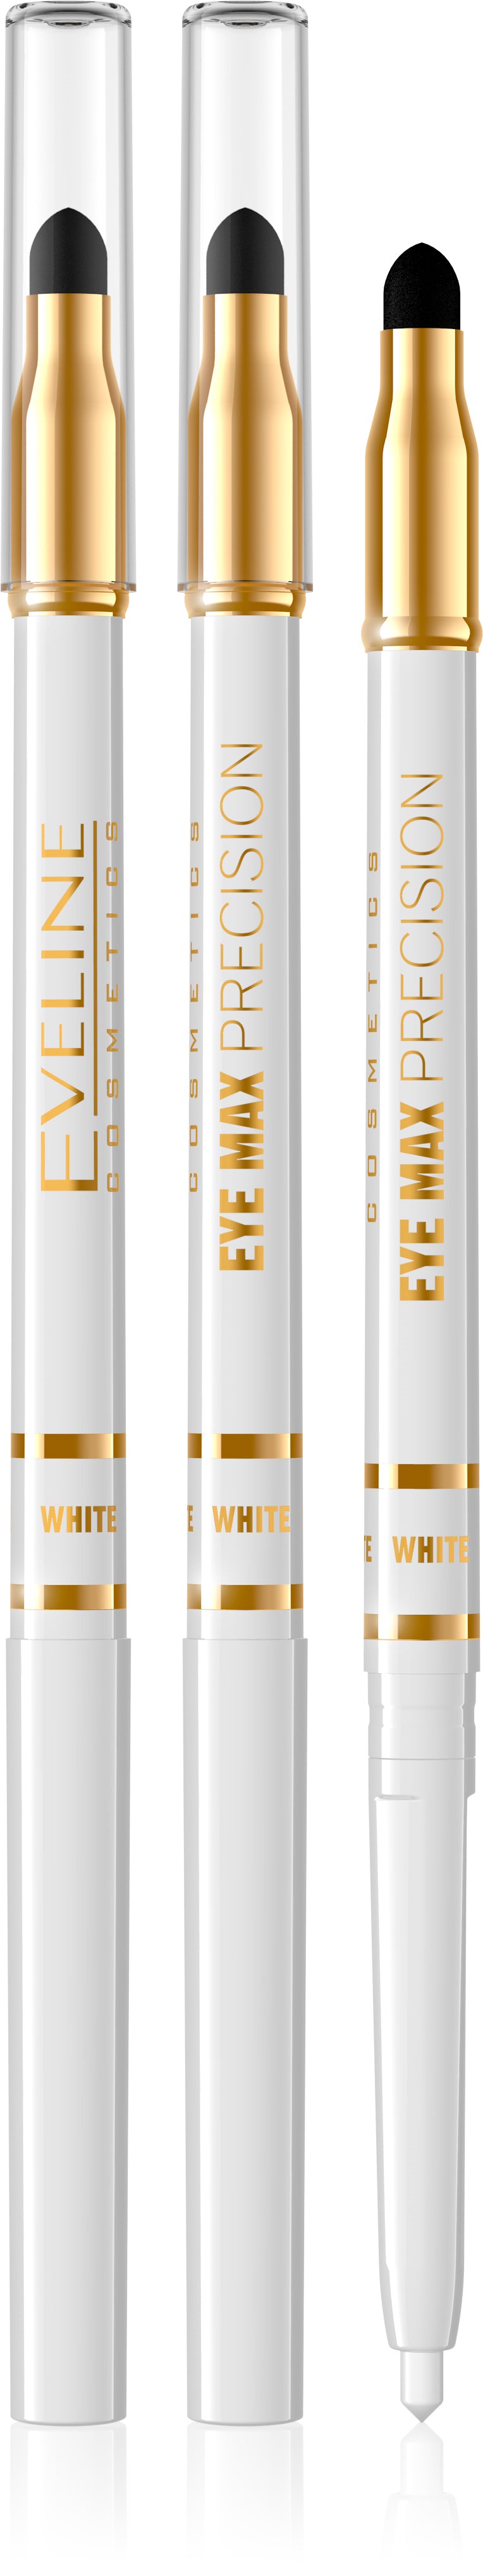 EYE MAX PRECISION-AUTOMATIC olovka za oči sa sunjerom -Bijela